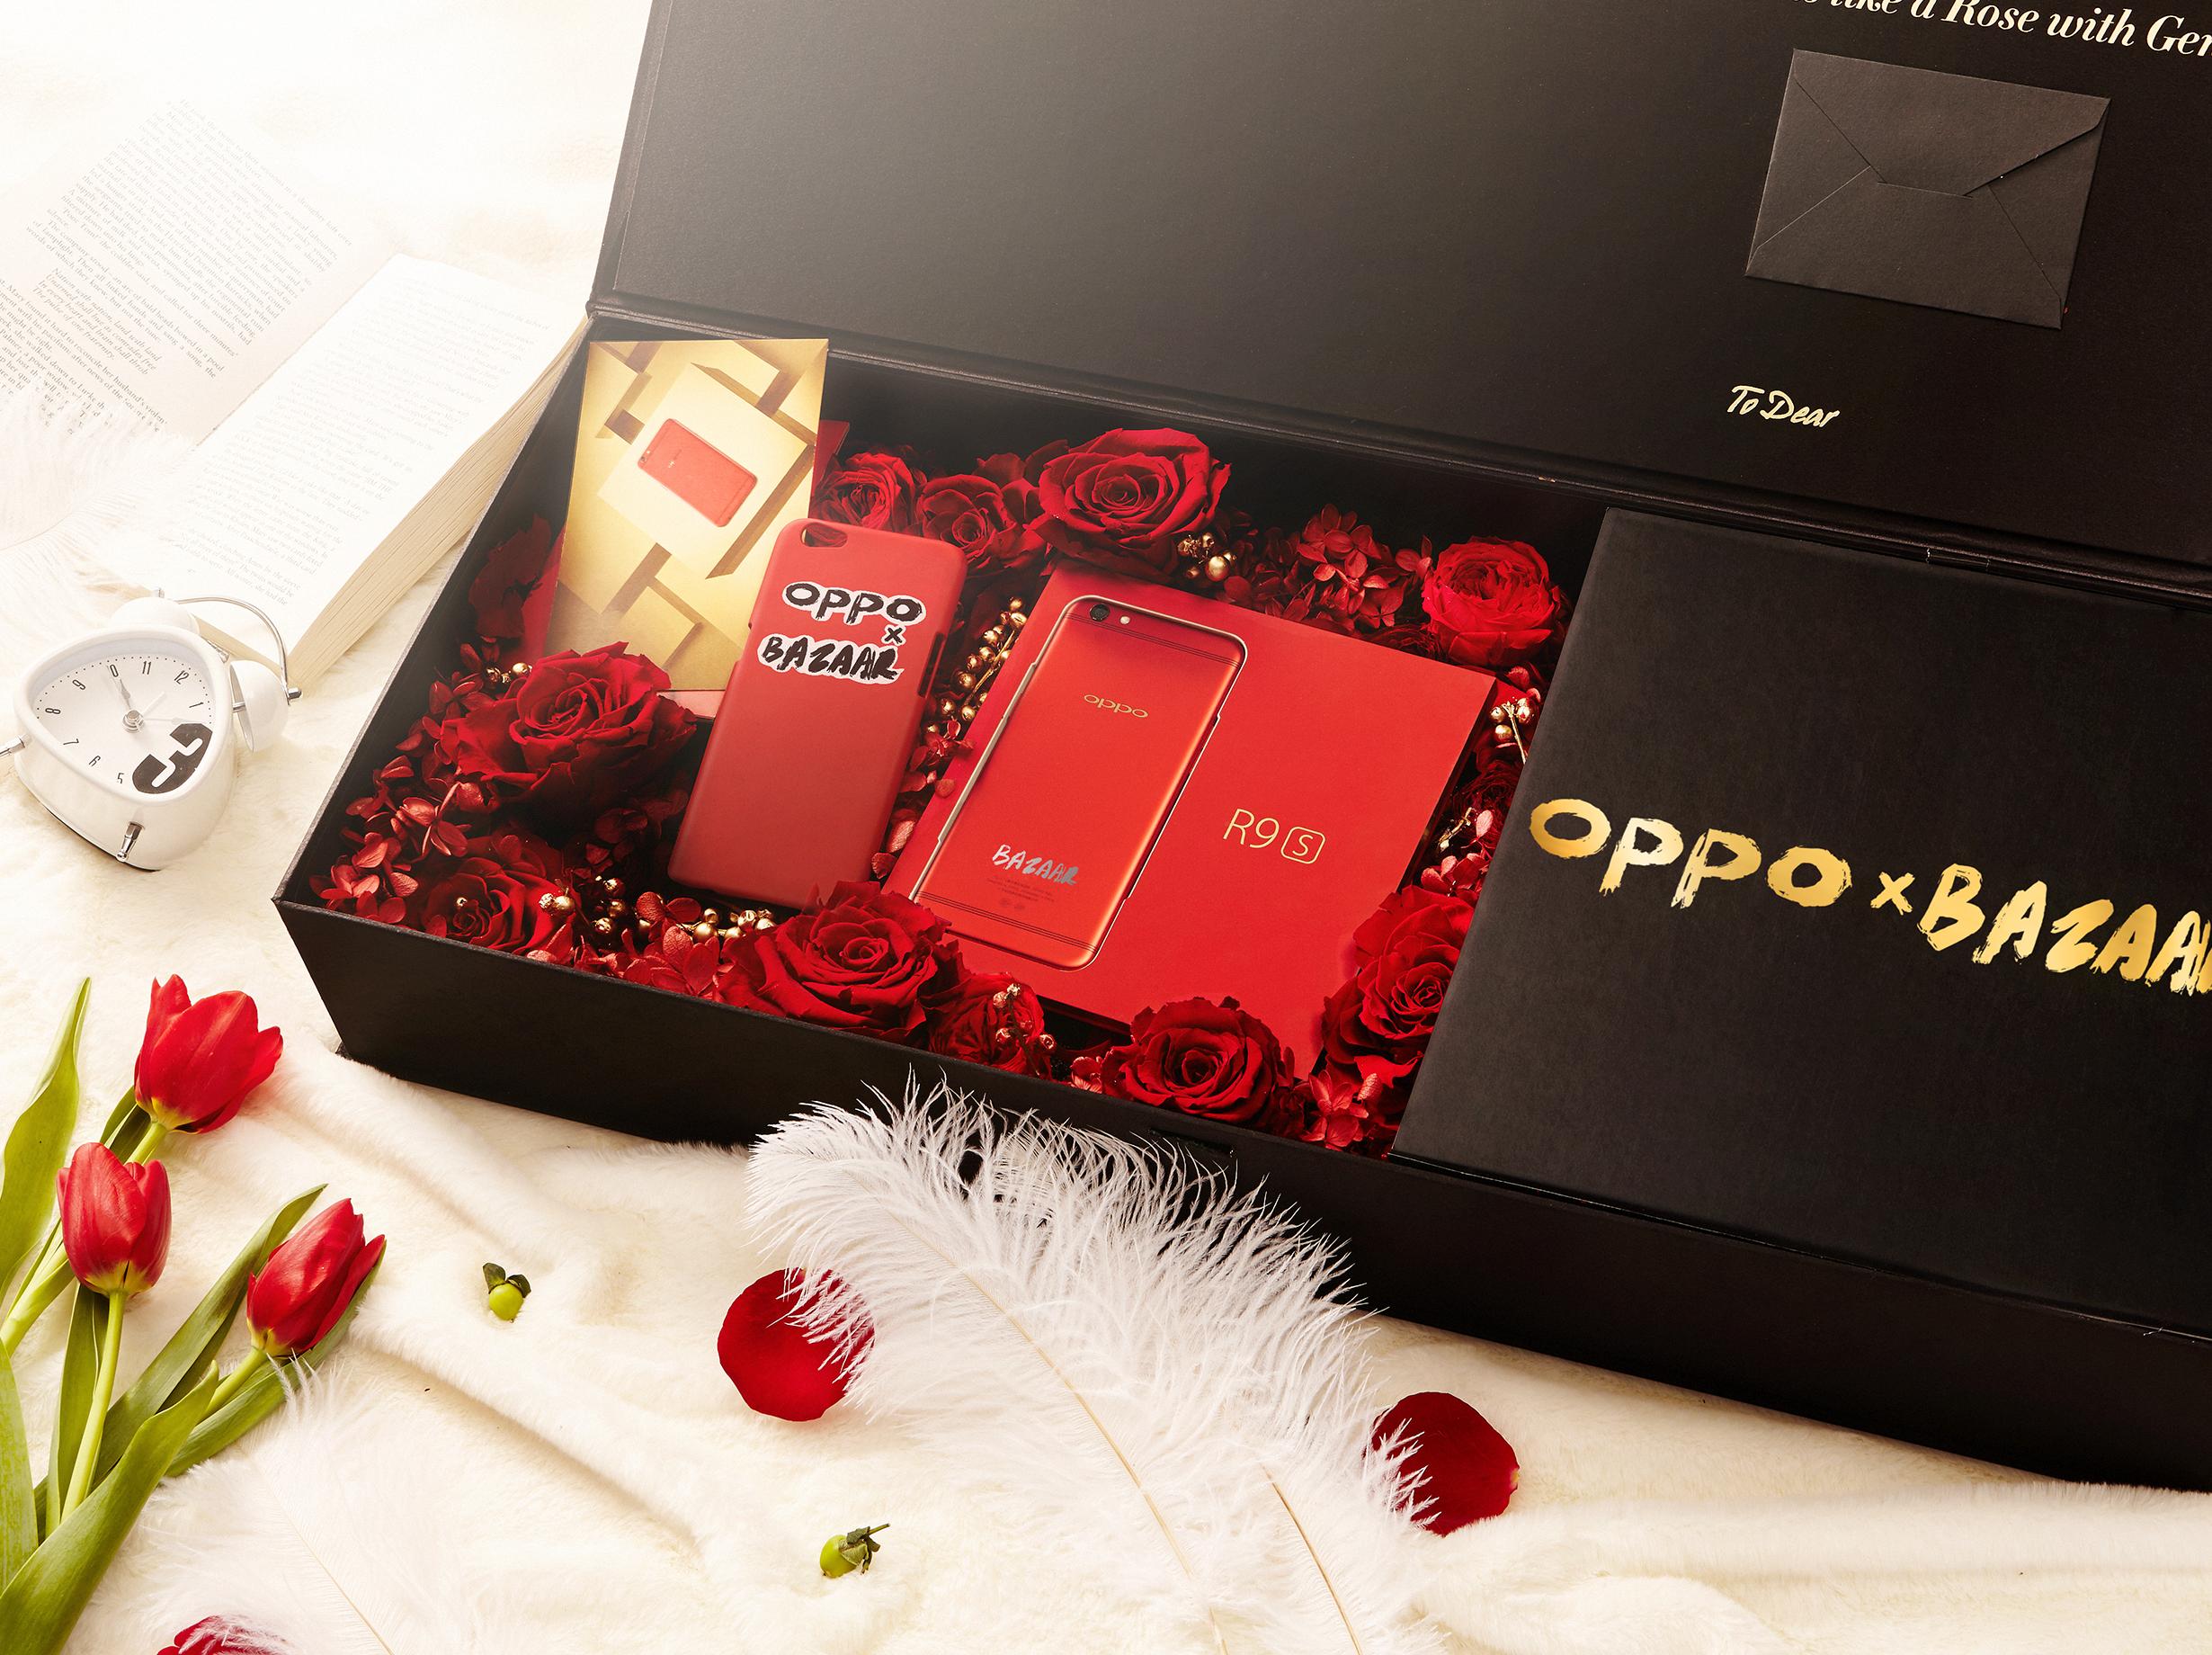 สะกดทุกสายตา!! OPPO R9s Special Red Edition เฉดสีแดงสุดร้อนแรงเปิดจอง ...